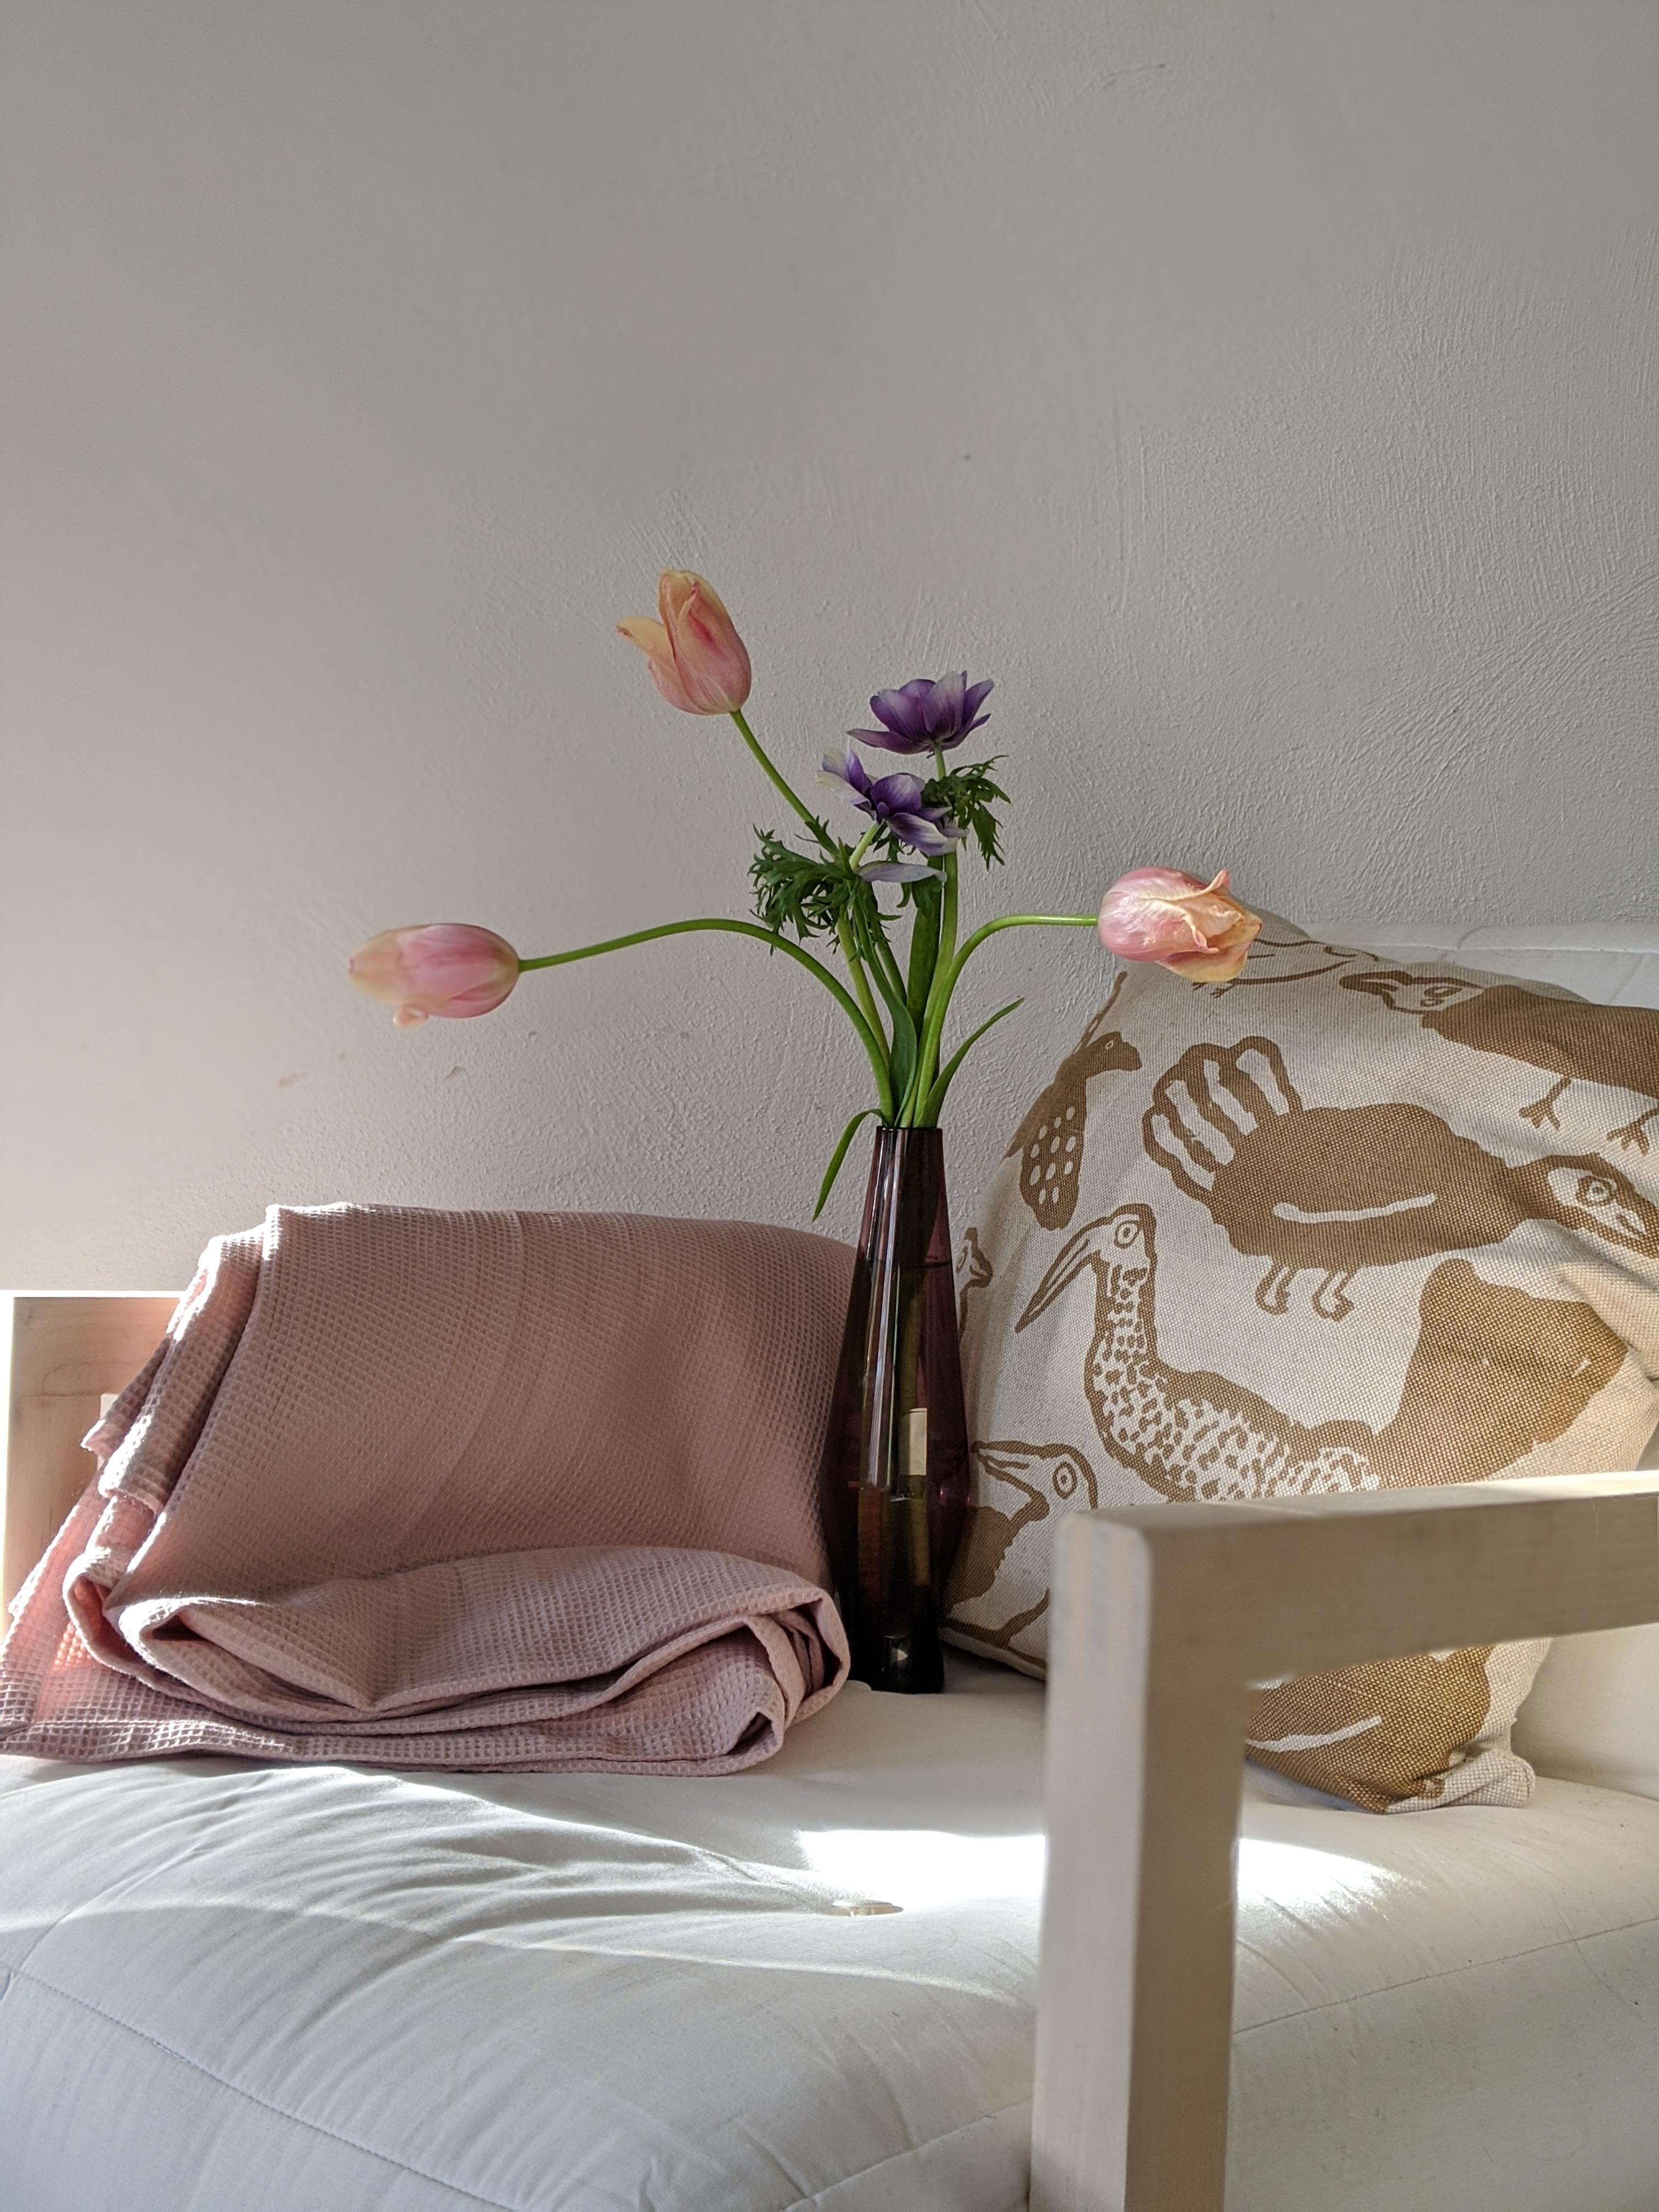 Frühlingsblumen sind eingezogen und eine wunderschöne Vintage Vase. #livingroom #vintage #blunenliebe #home #wohnzimmer 